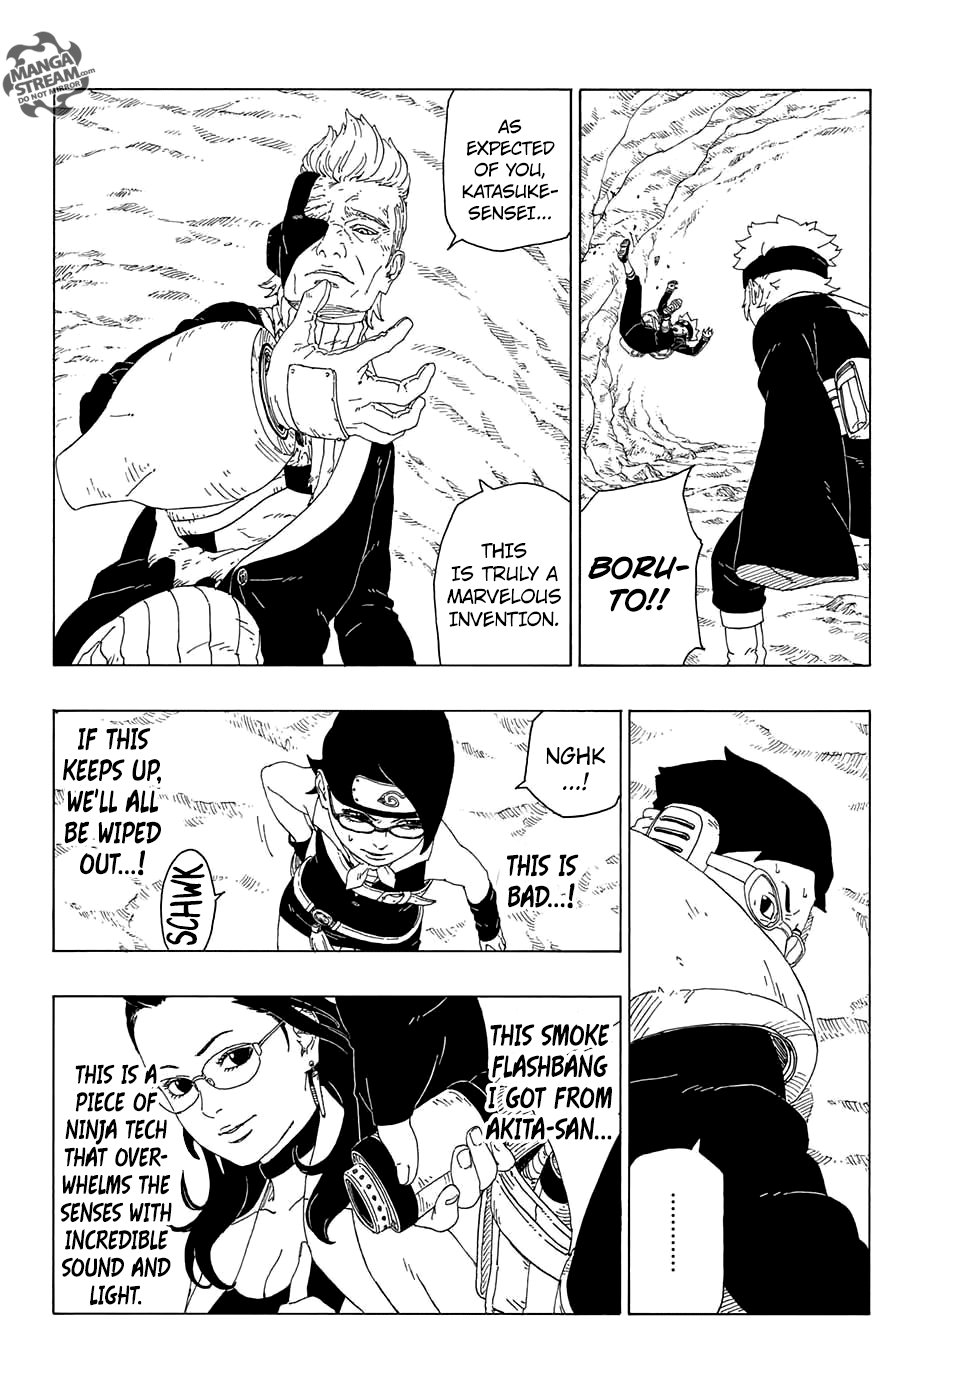 Boruto: Naruto Next Generations Chapter 20 : Ninja Technology | Page 16